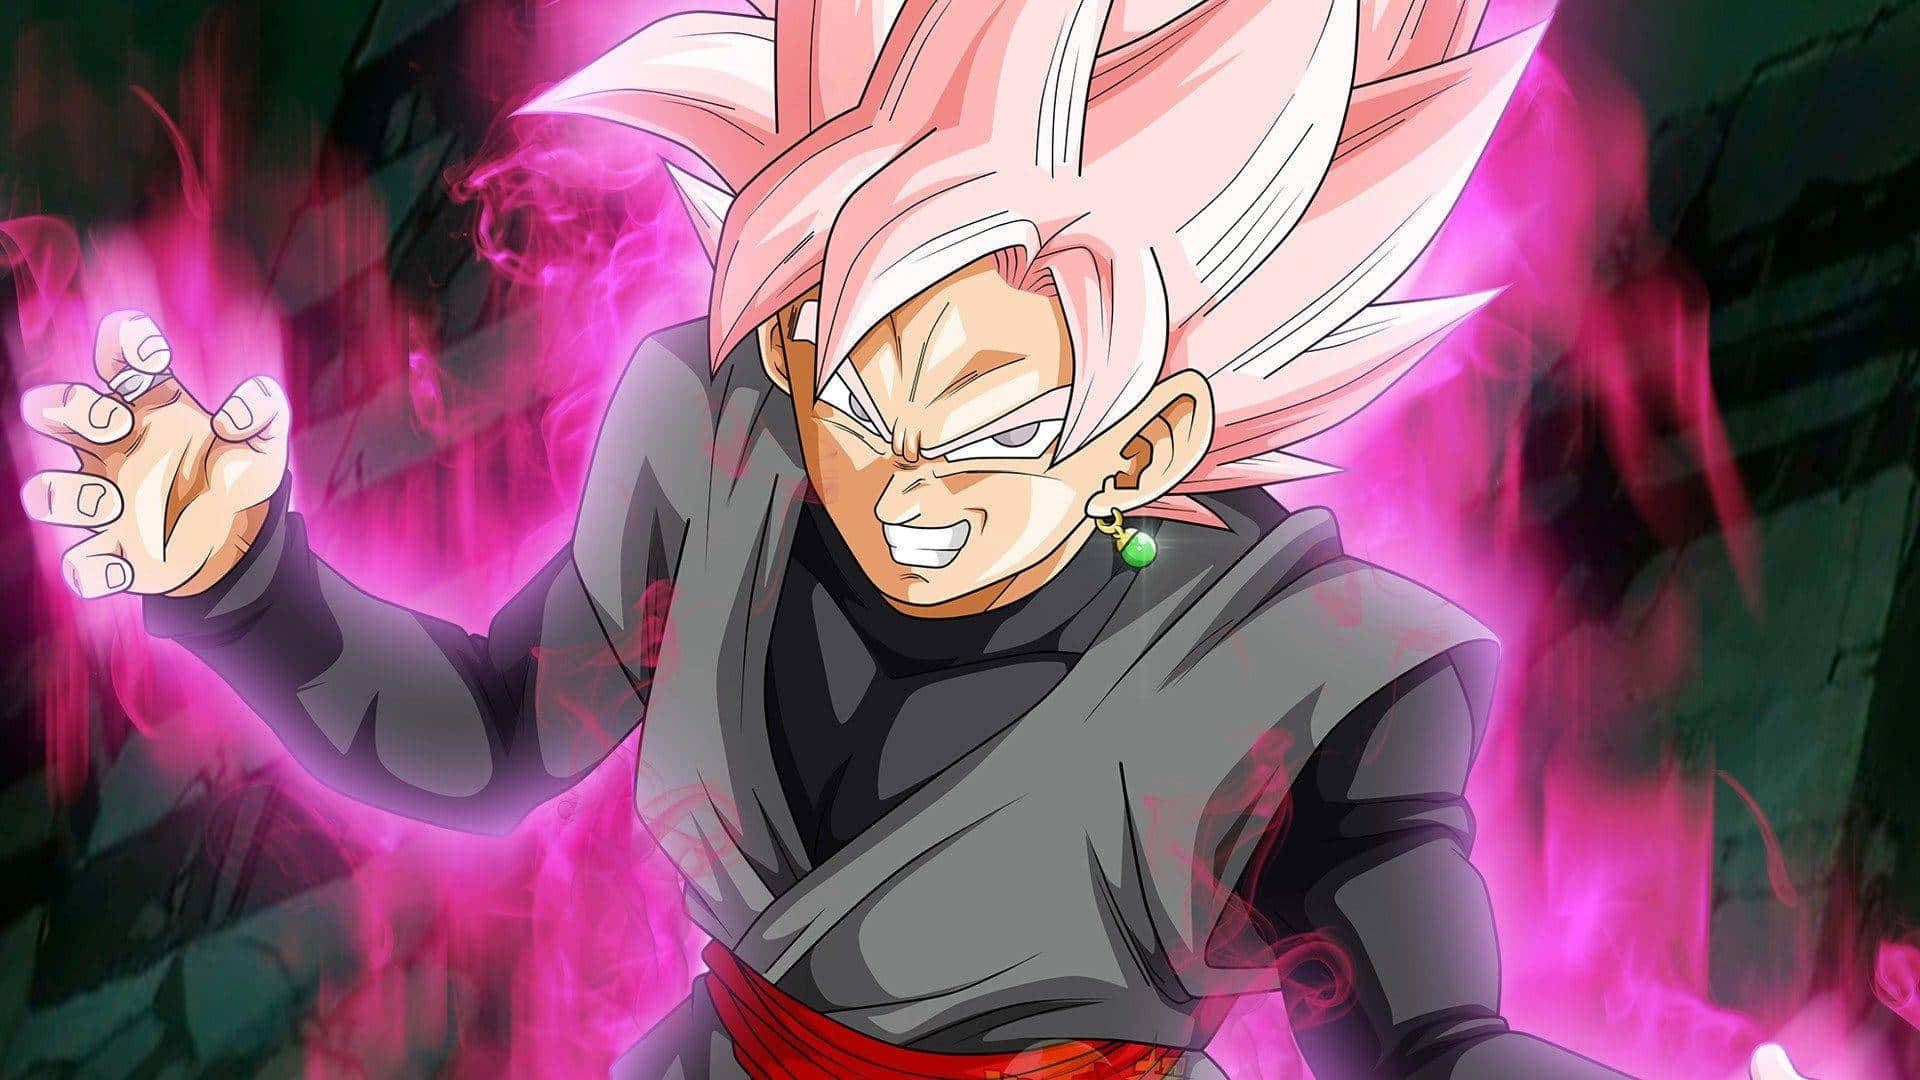 En vred udtryk på ansigtet af Goku, hovedpersonen i den populære anime Dragon Ball Z. Wallpaper